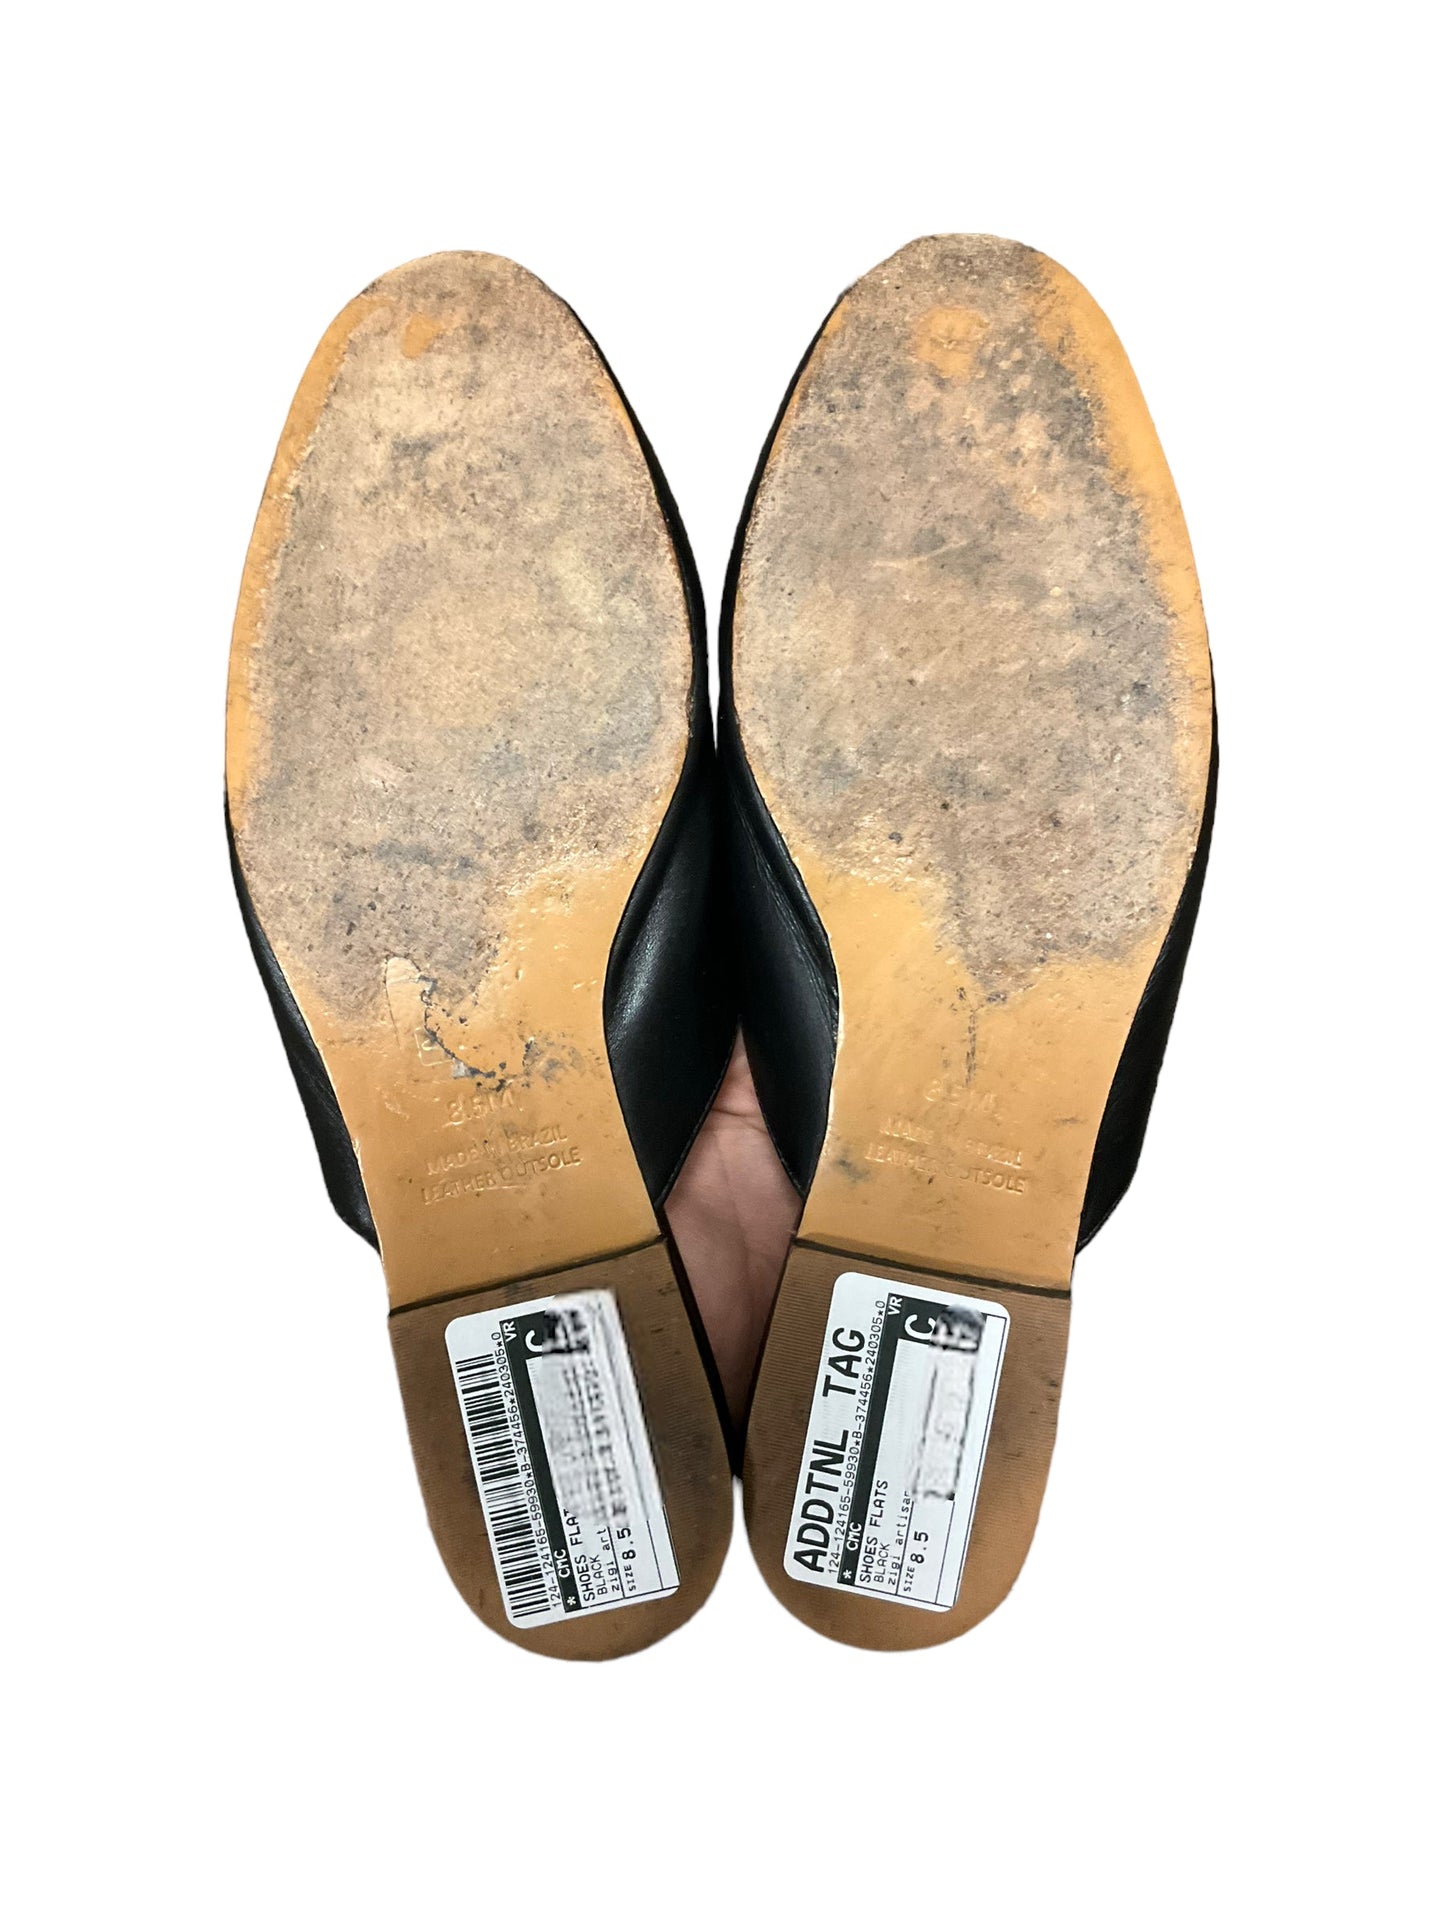 Shoes Flats By ZIGI   Size: 8.5